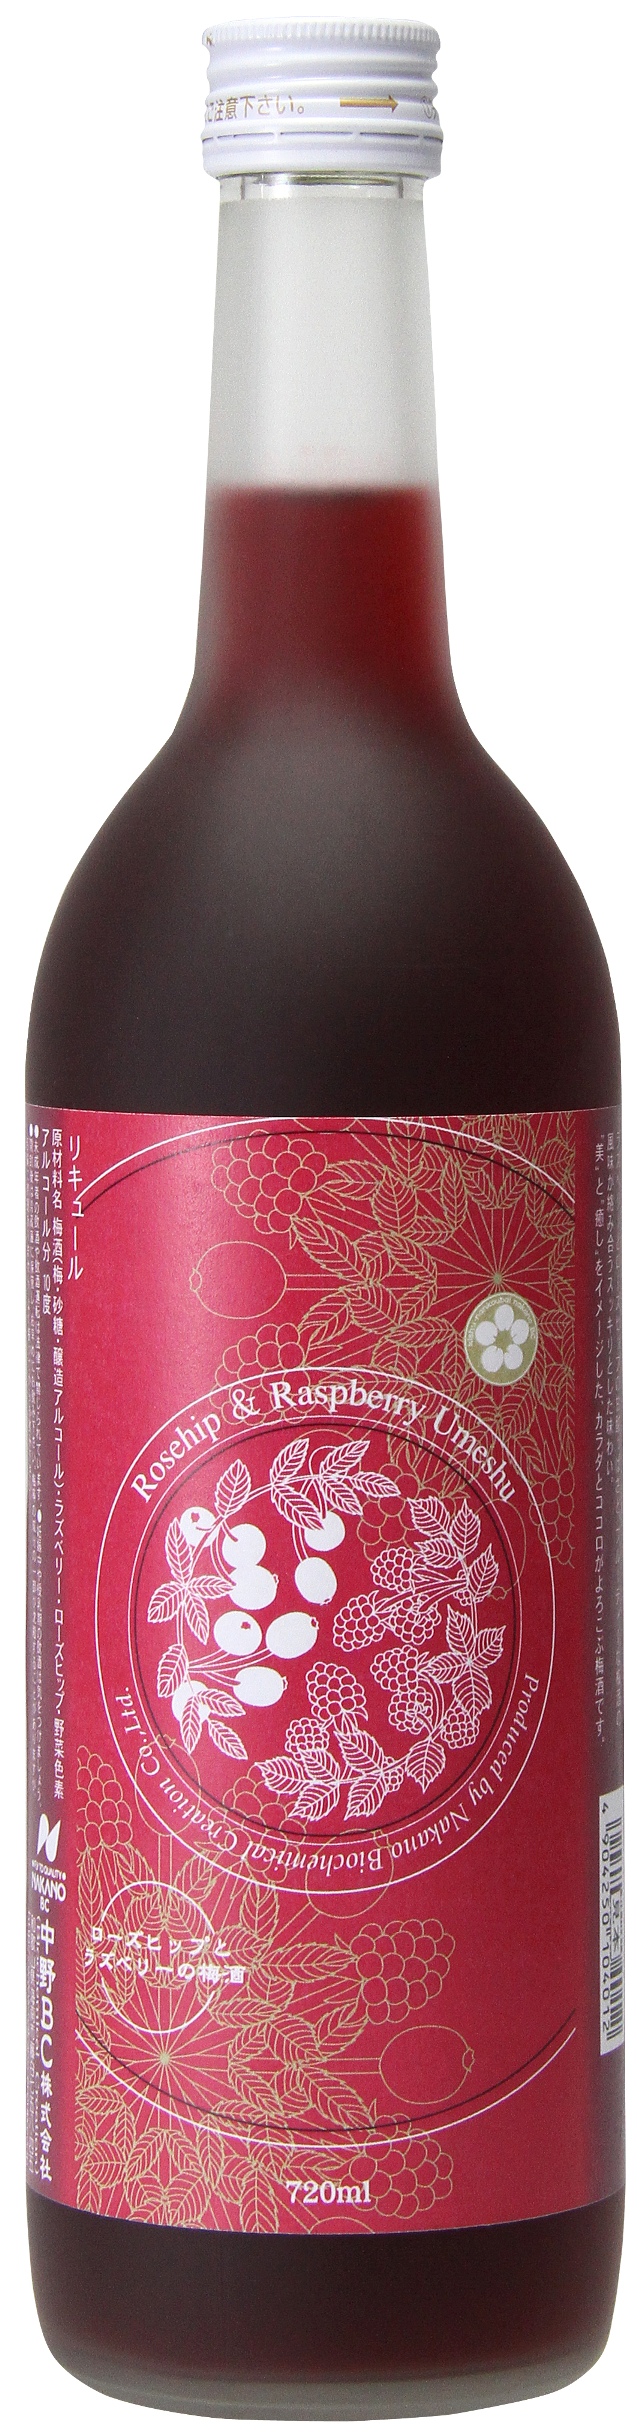 女性向けに “アロマ梅酒” を開発 「ローズヒップとラズベリーの梅酒」 9/13発売 通常より完熟度合いの高い紀州南高梅を使用